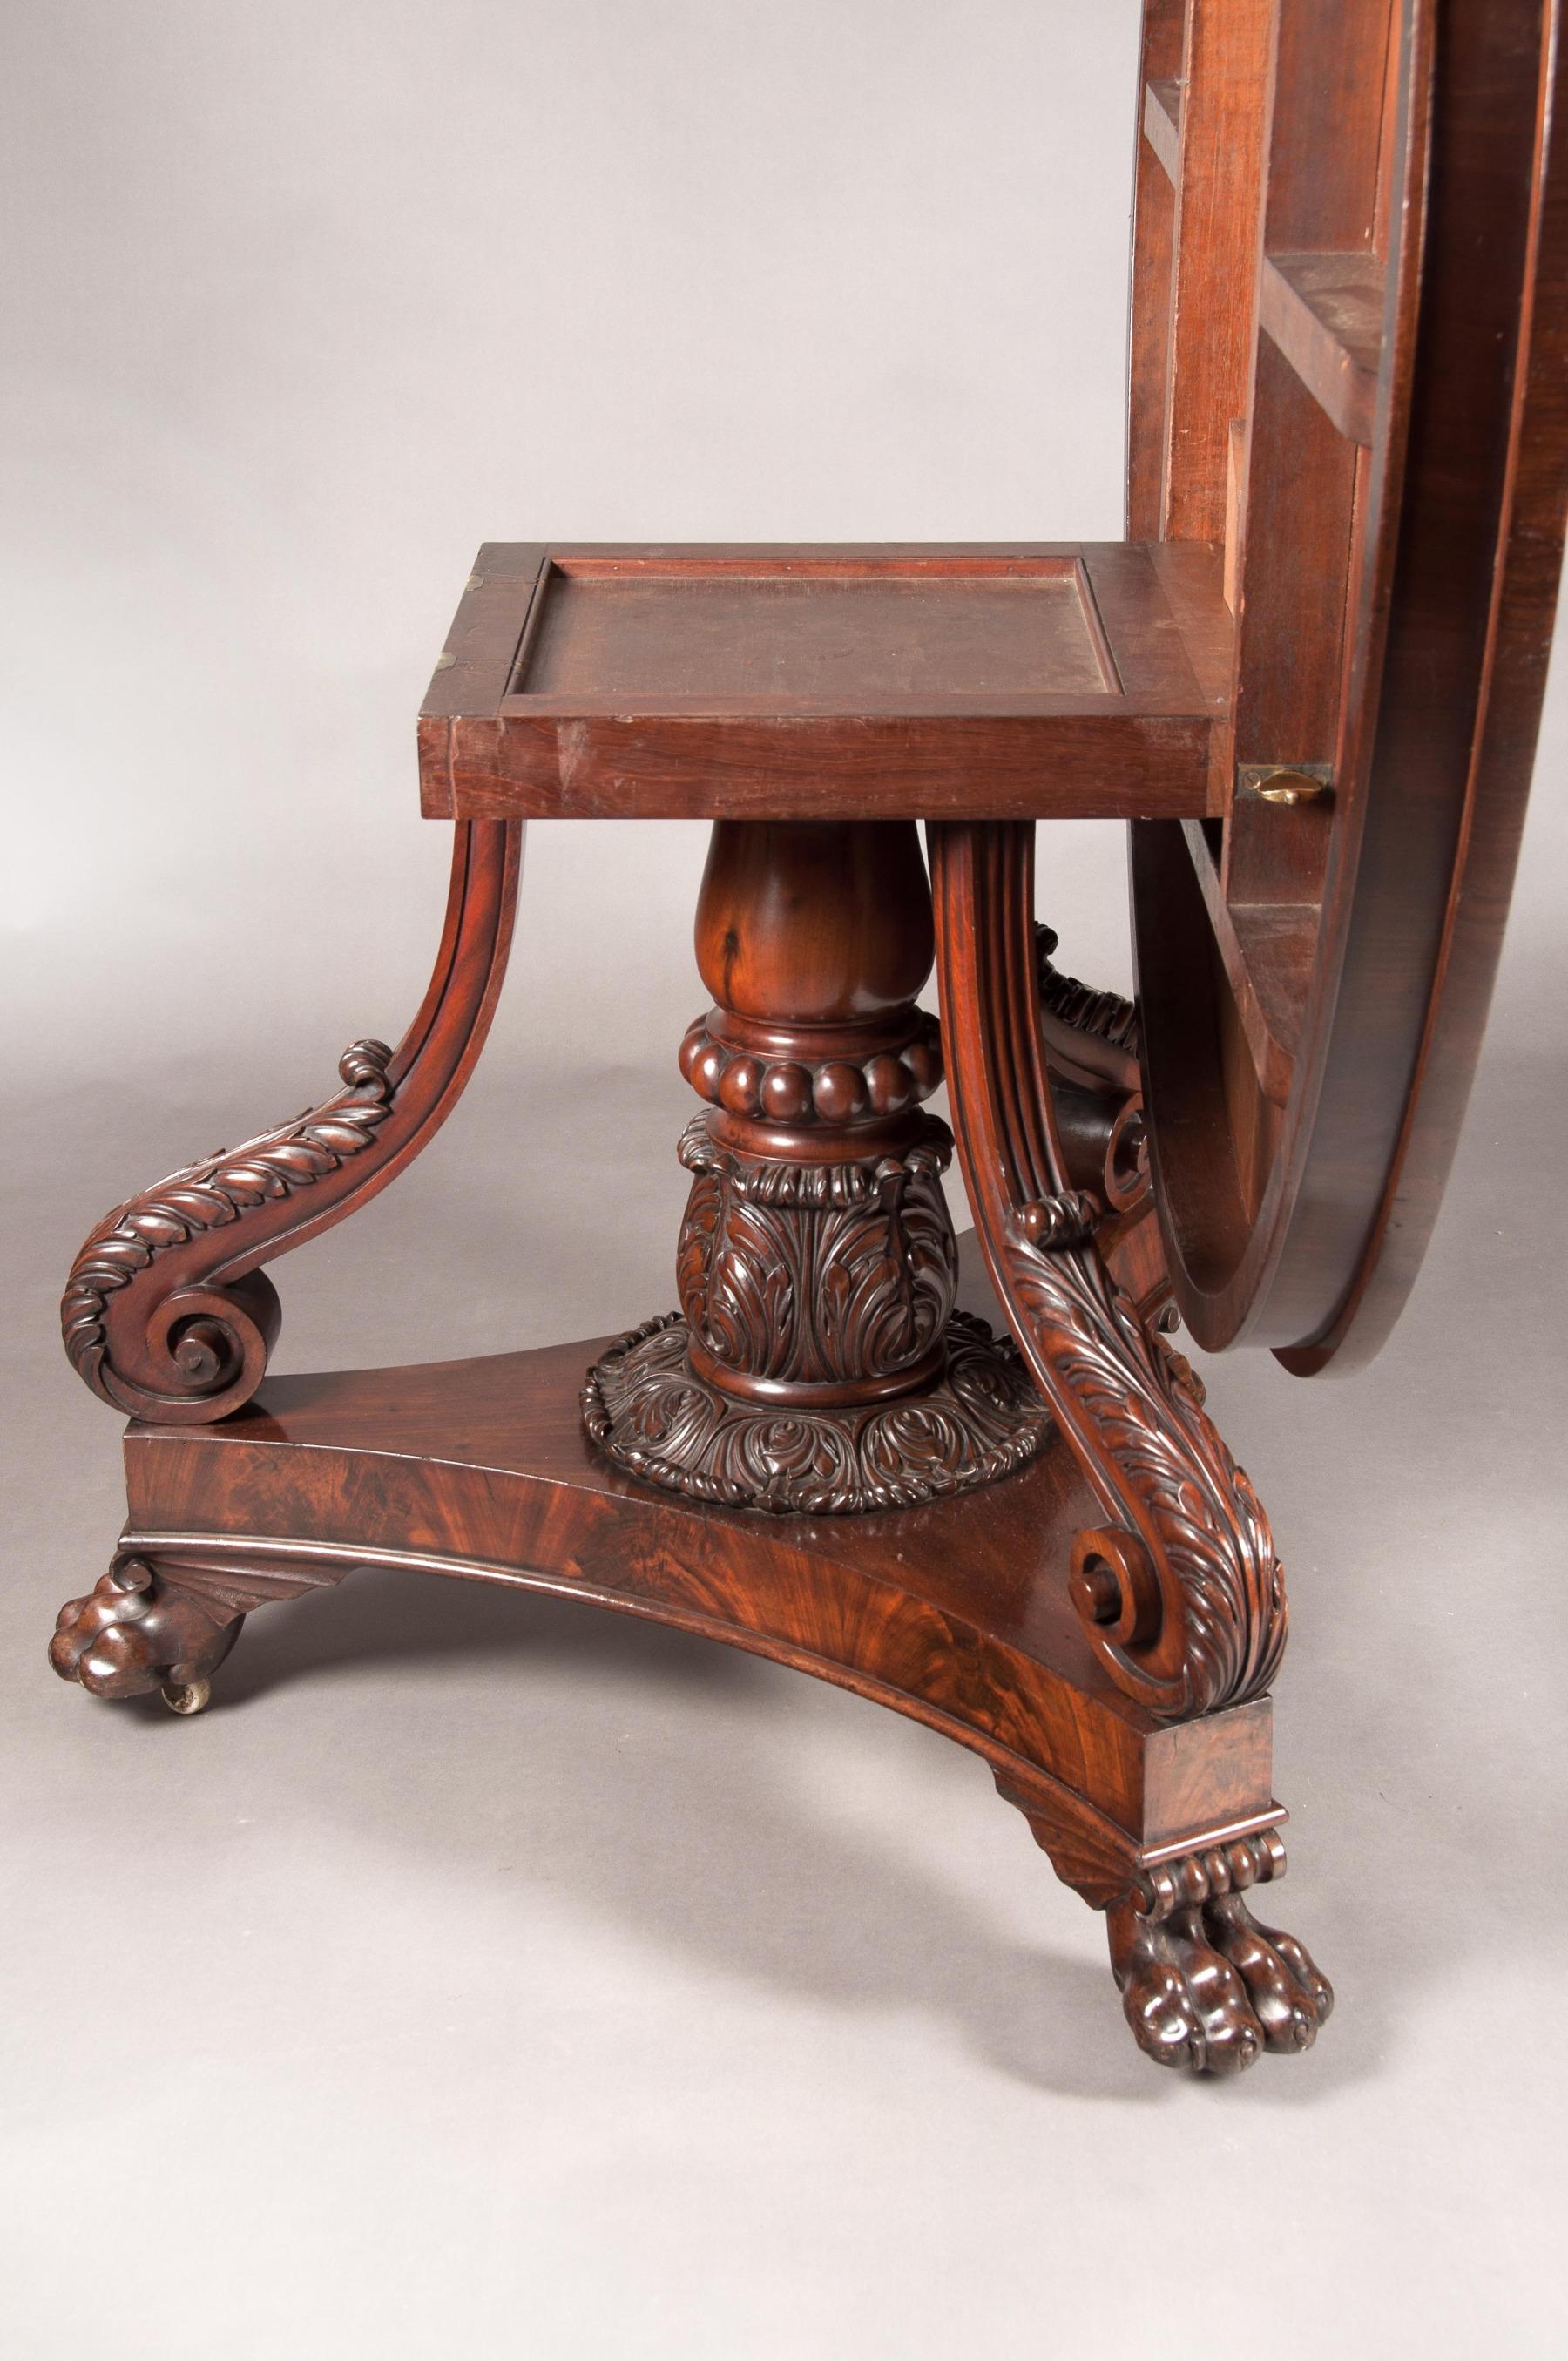 19th Century Fine Regency Period Mahogany Centre Table